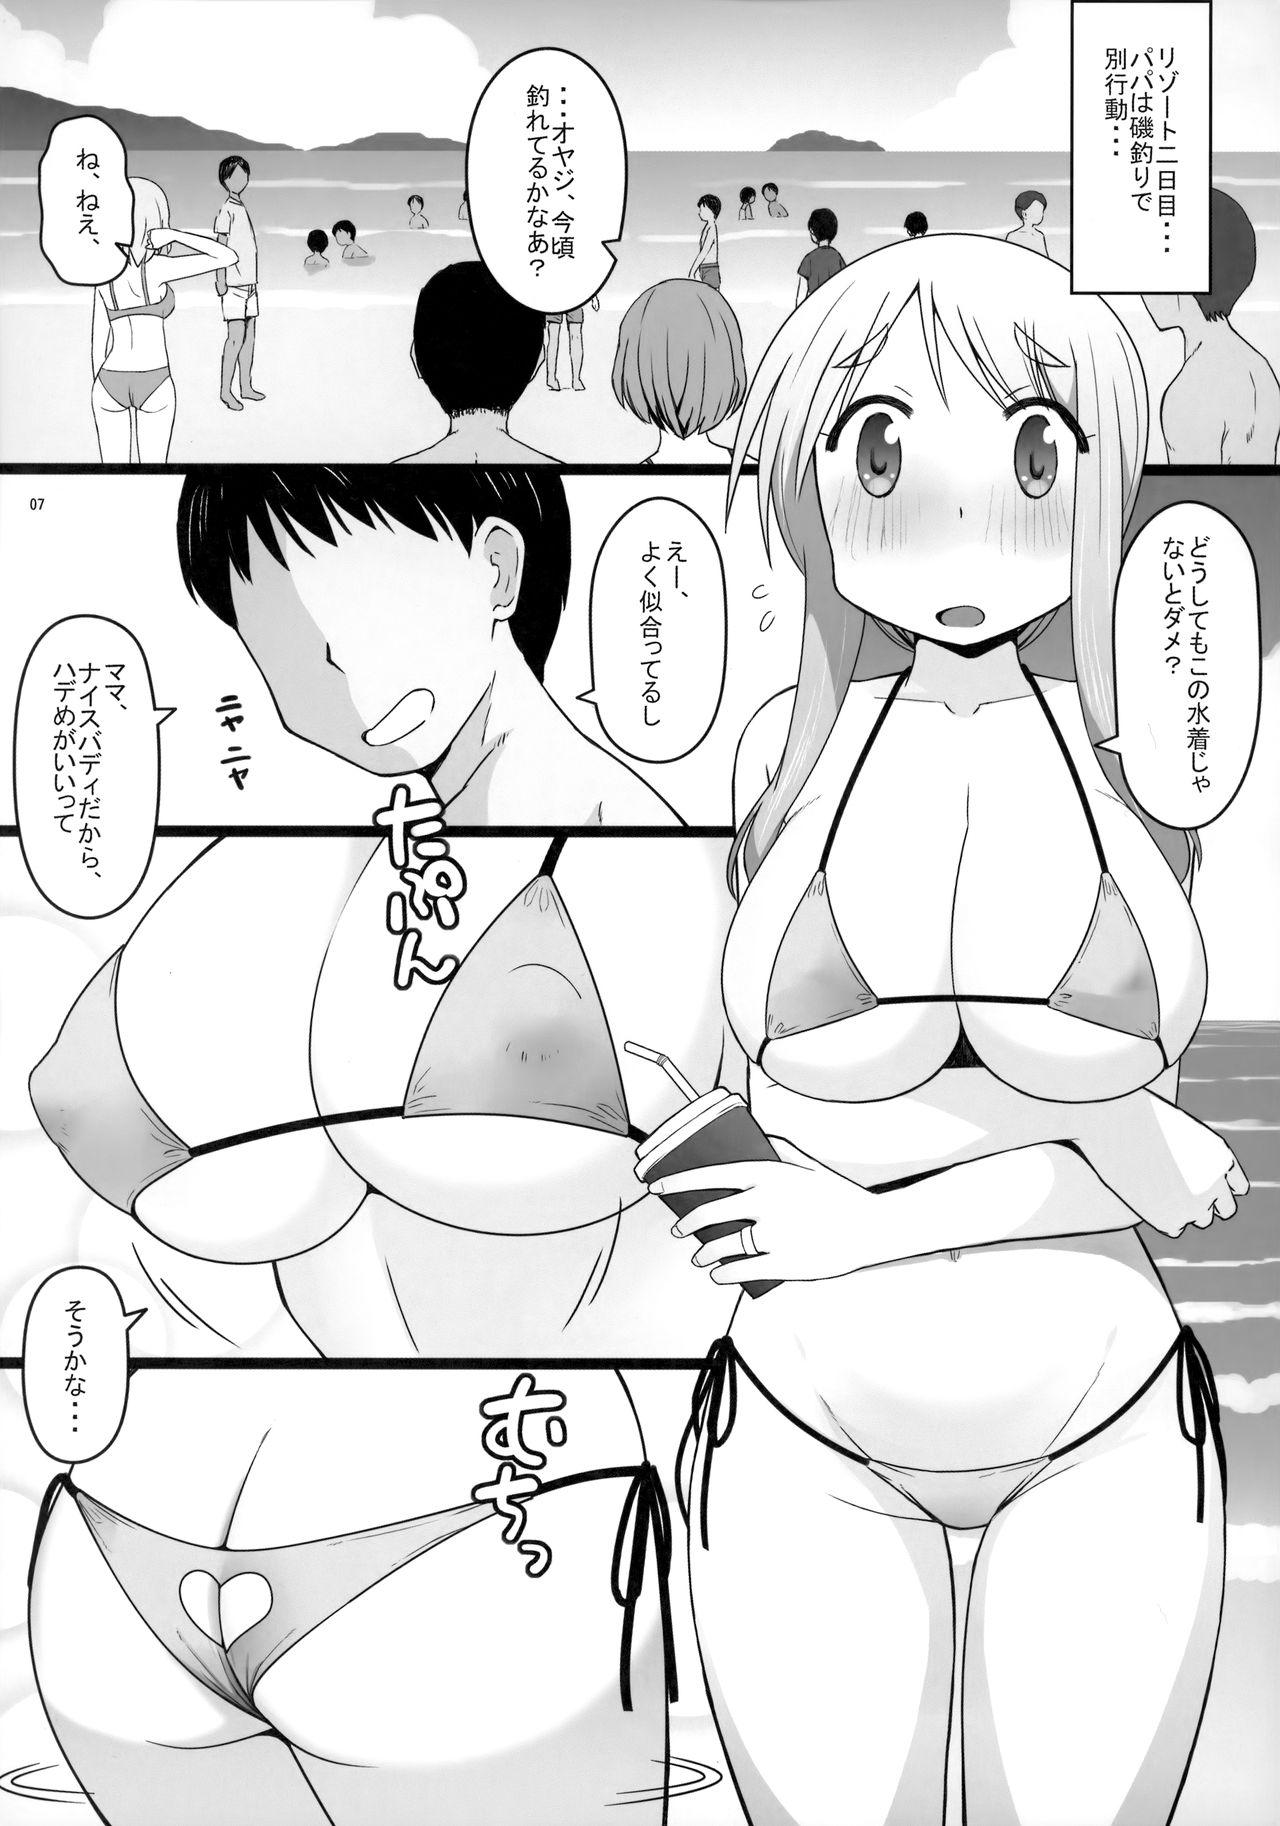 Porn Blow Jobs Angel's stroke 129 DSY2 bakku daisuki! Giri no musuko to beddo ni shizumu gosai haha Yoriko-chan! ! - Yuyushiki Amazing - Page 8